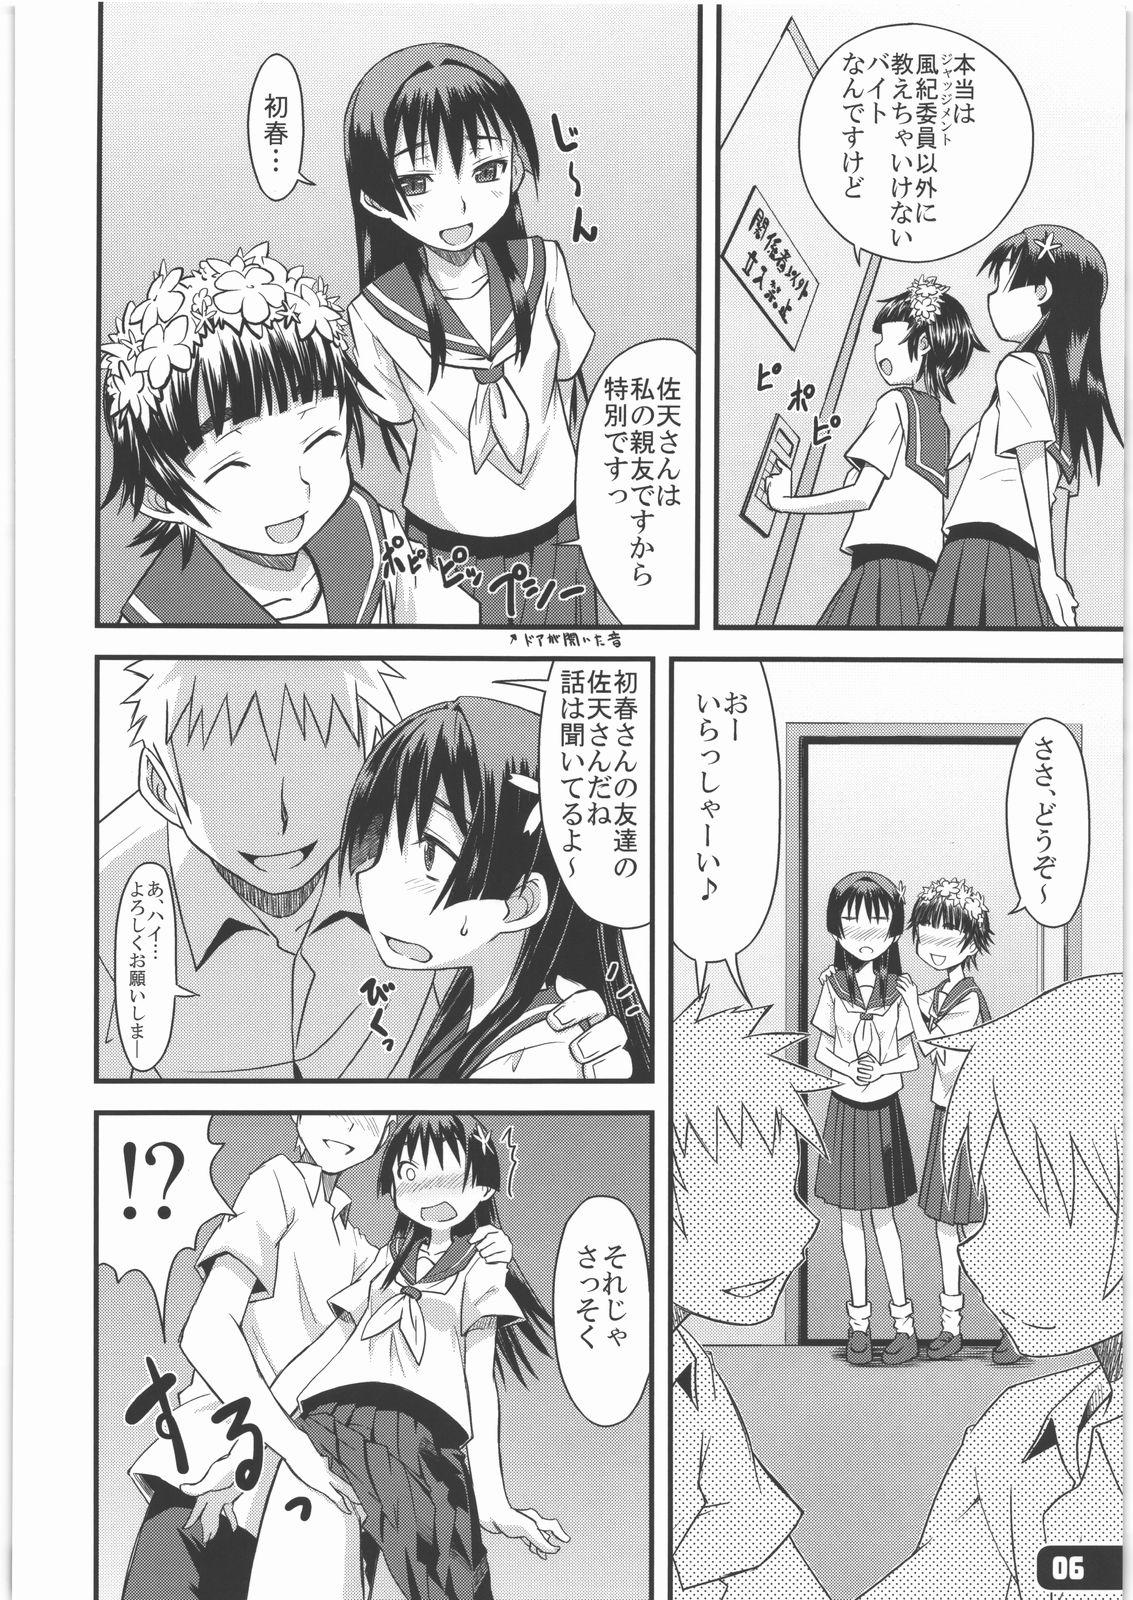 Mas Flower Girls - Toaru kagaku no railgun Desperate - Page 5